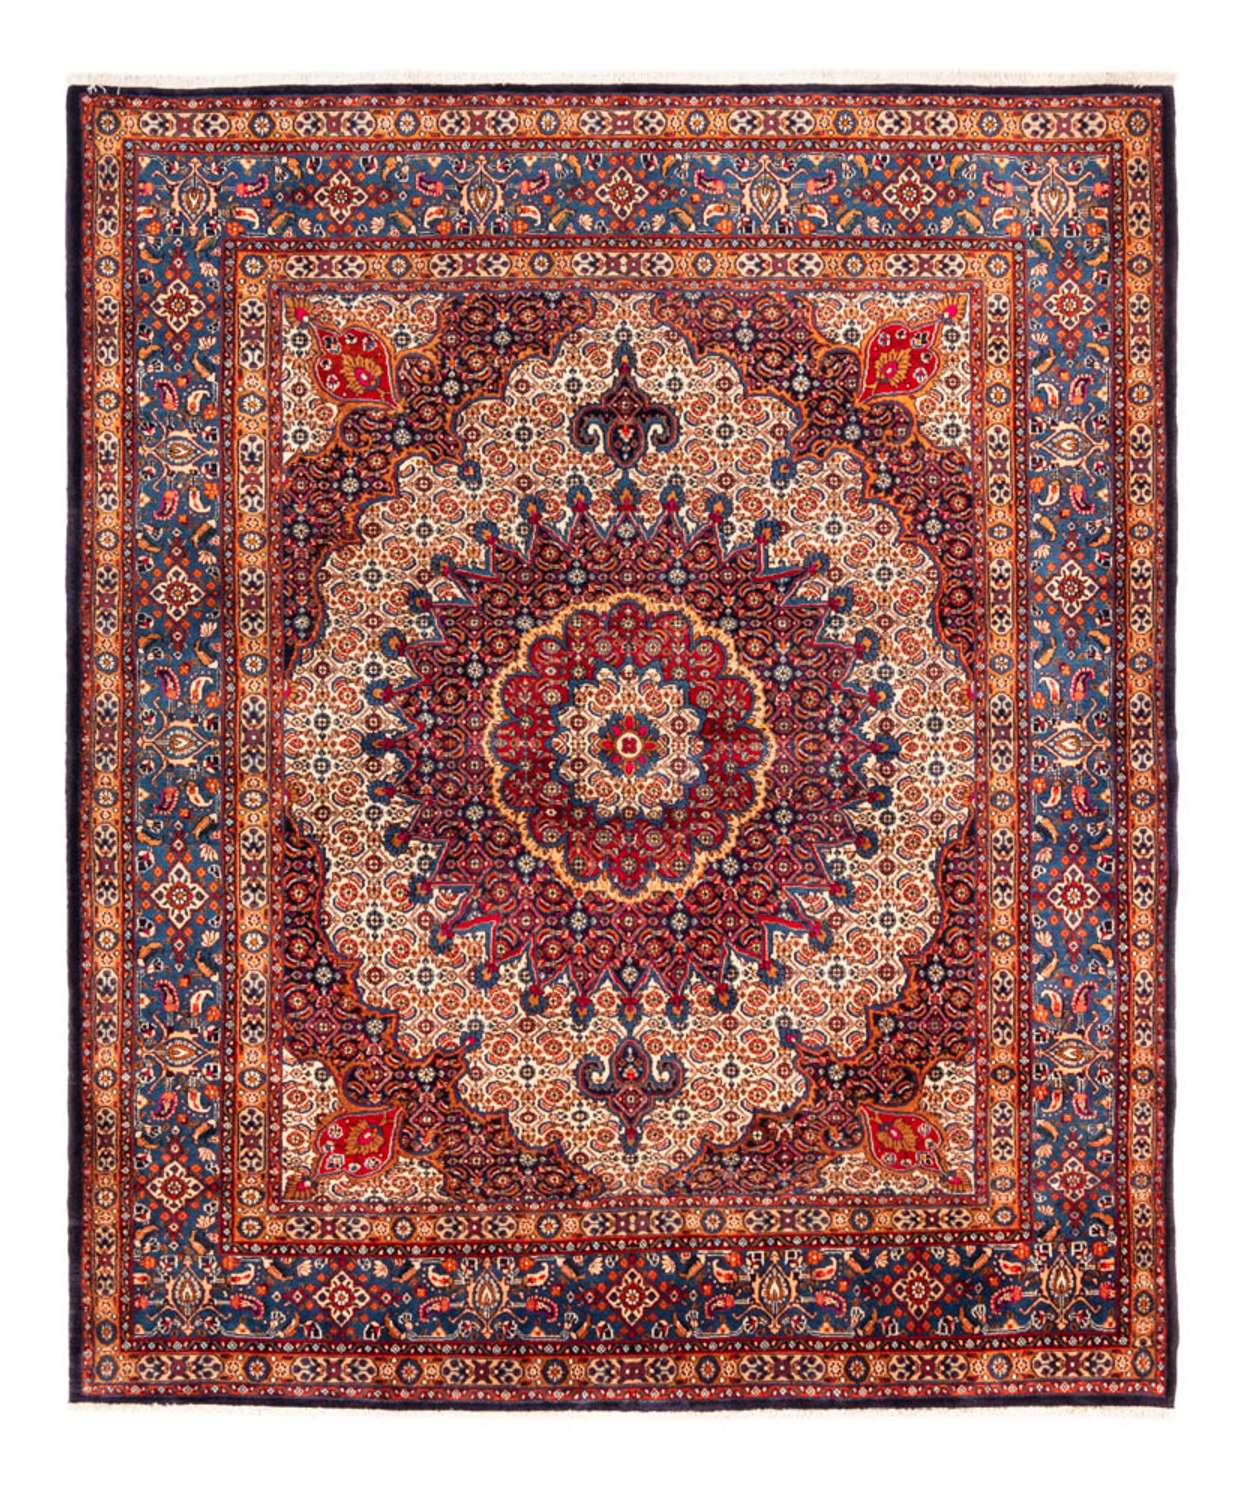 Alfombra persa - Clásica - 262 x 217 cm - rojo